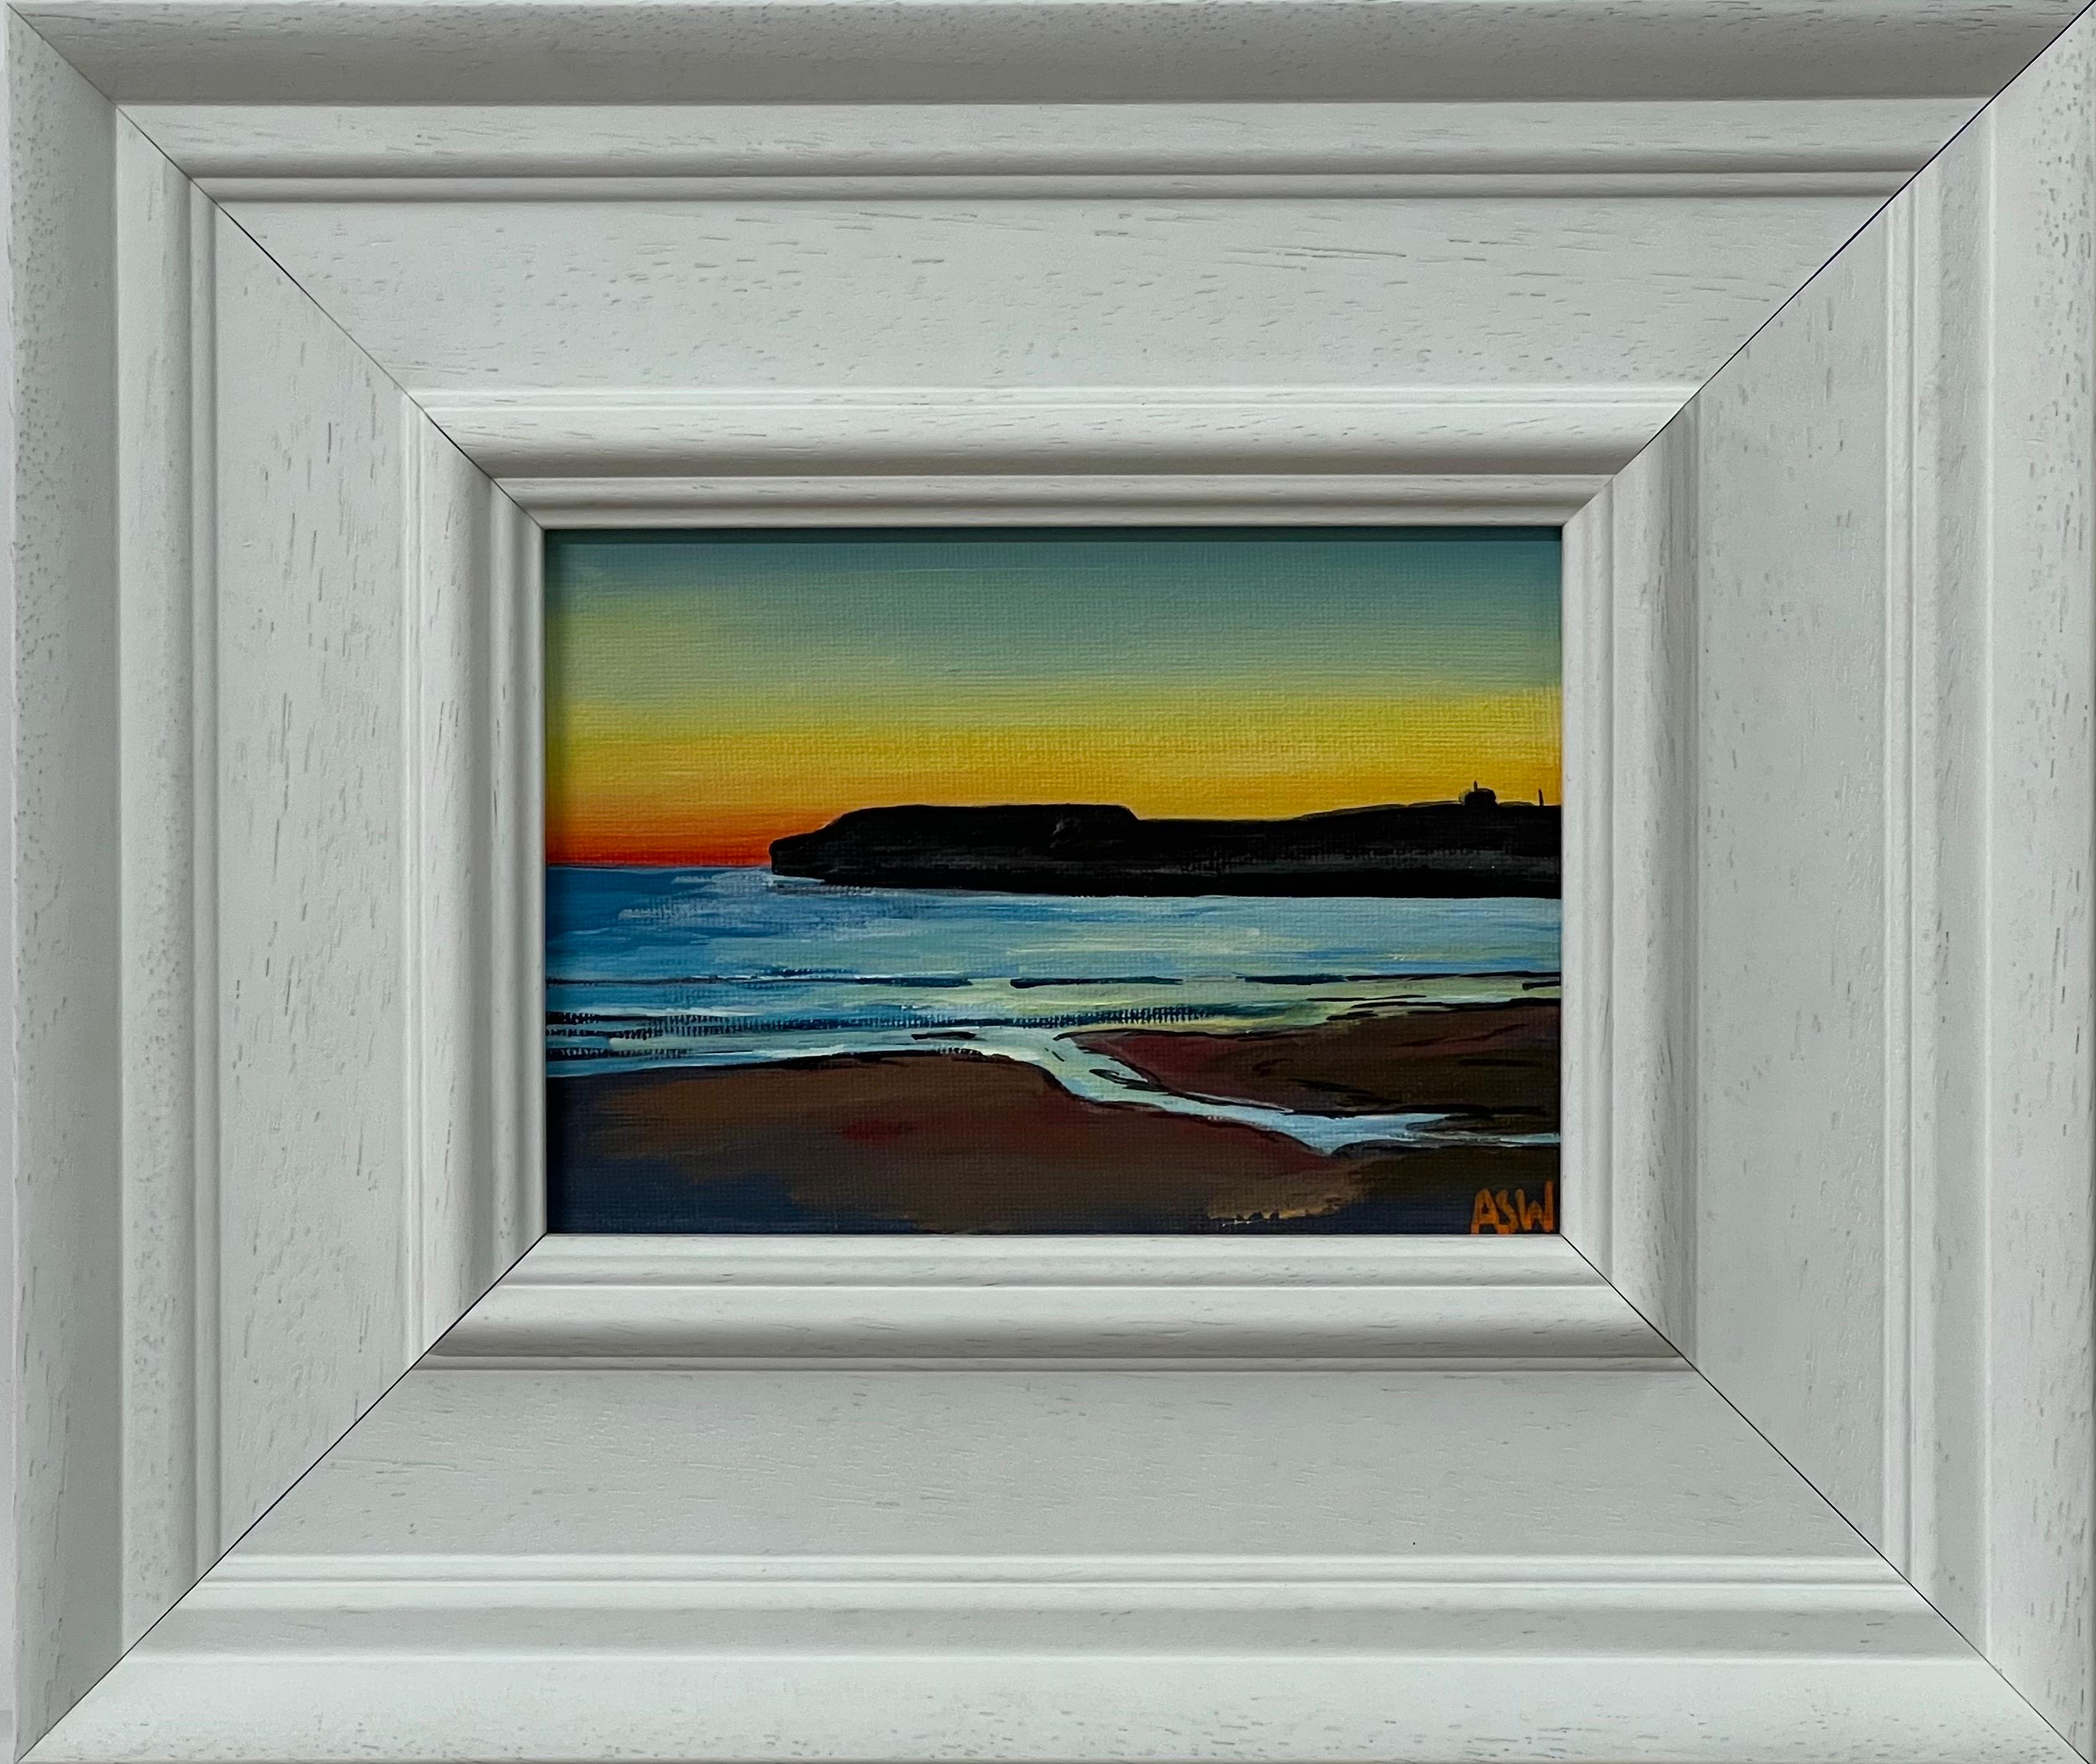 Abstract Painting Angela Wakefield - Miniature du coucher de soleil de Dunnet Head dans les Highlands écossais par un artiste britannique